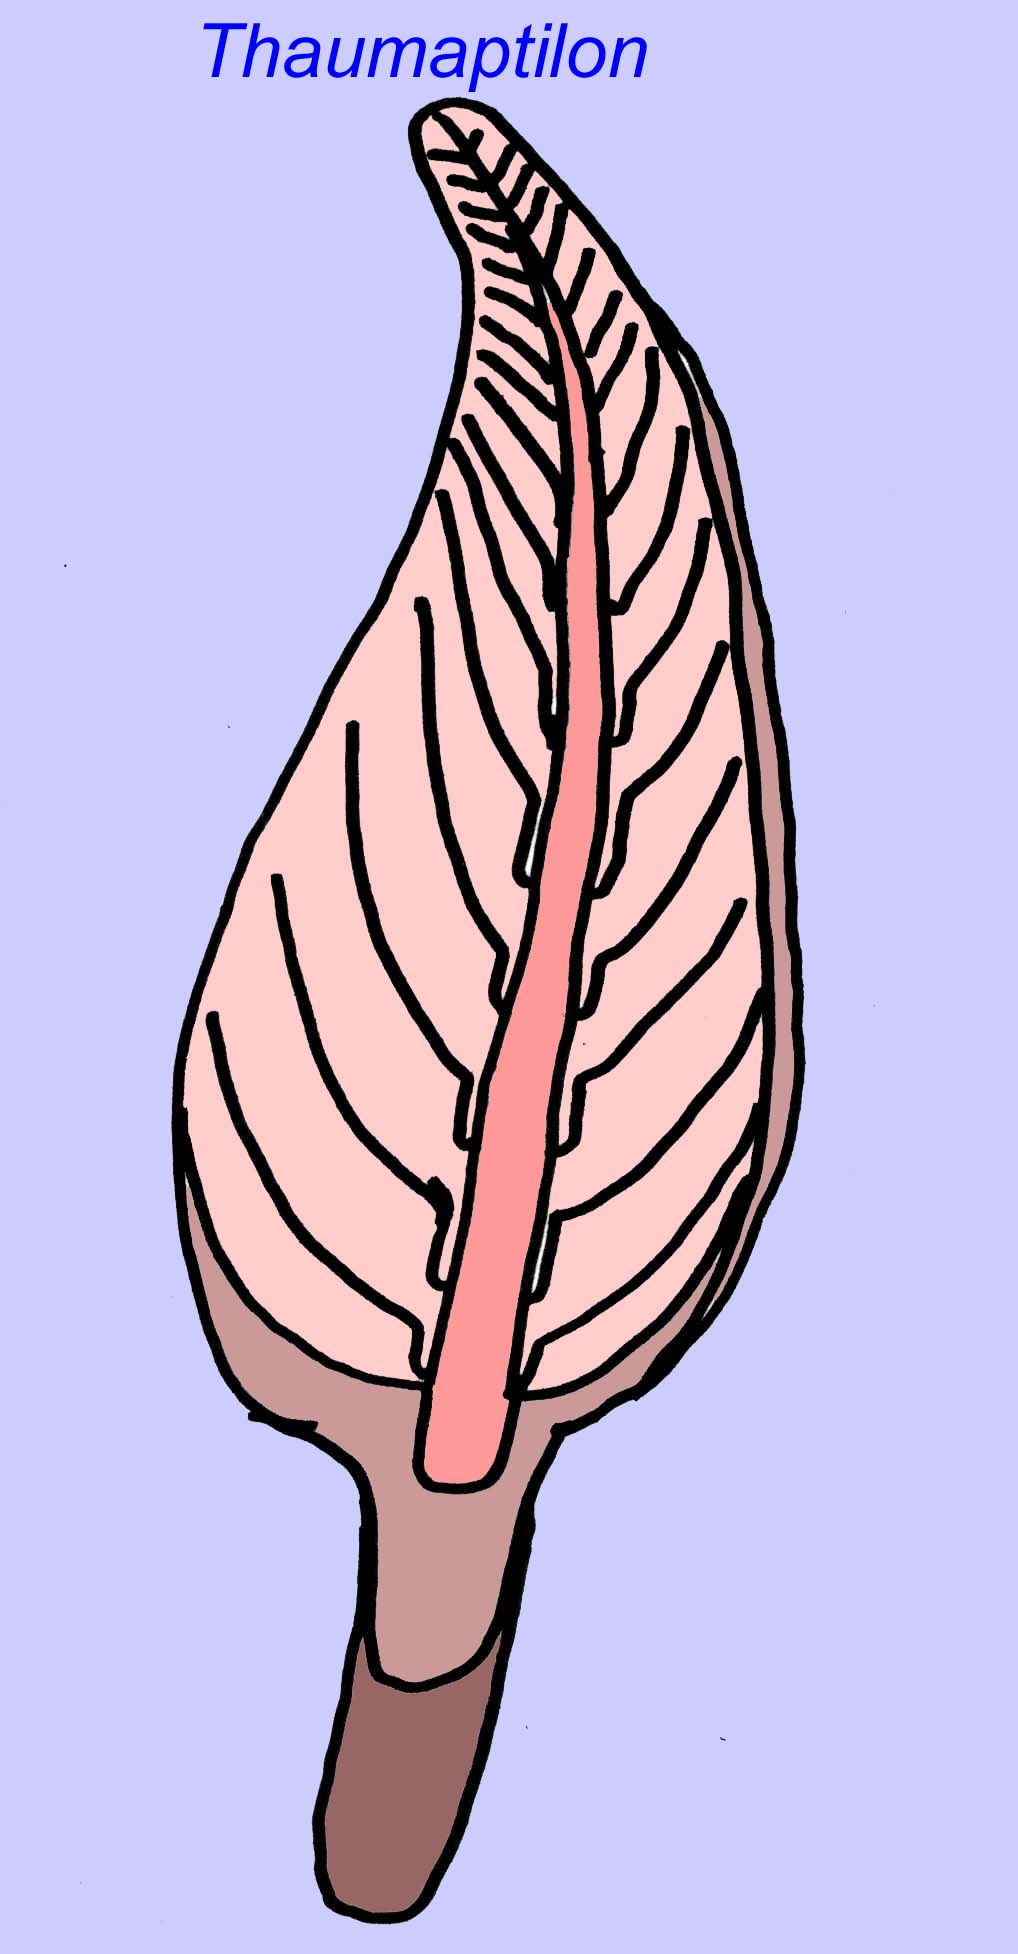 cnidarian resembling sea pen